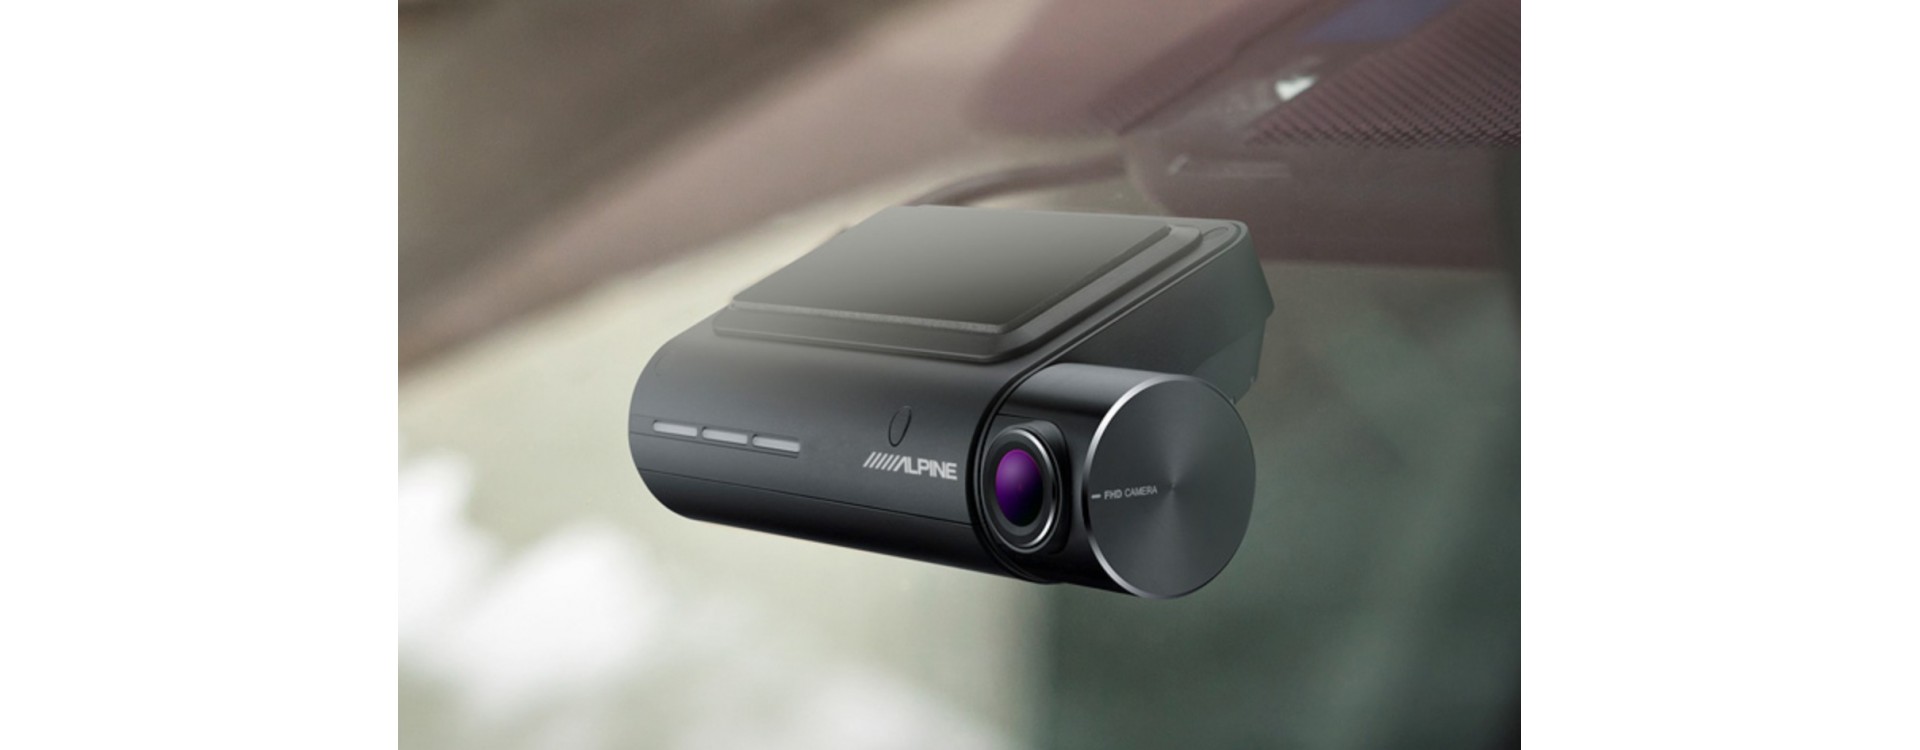 Blazen honderd pakket Onze top drie dashcam 2020 verkoop - trackers-cam.com